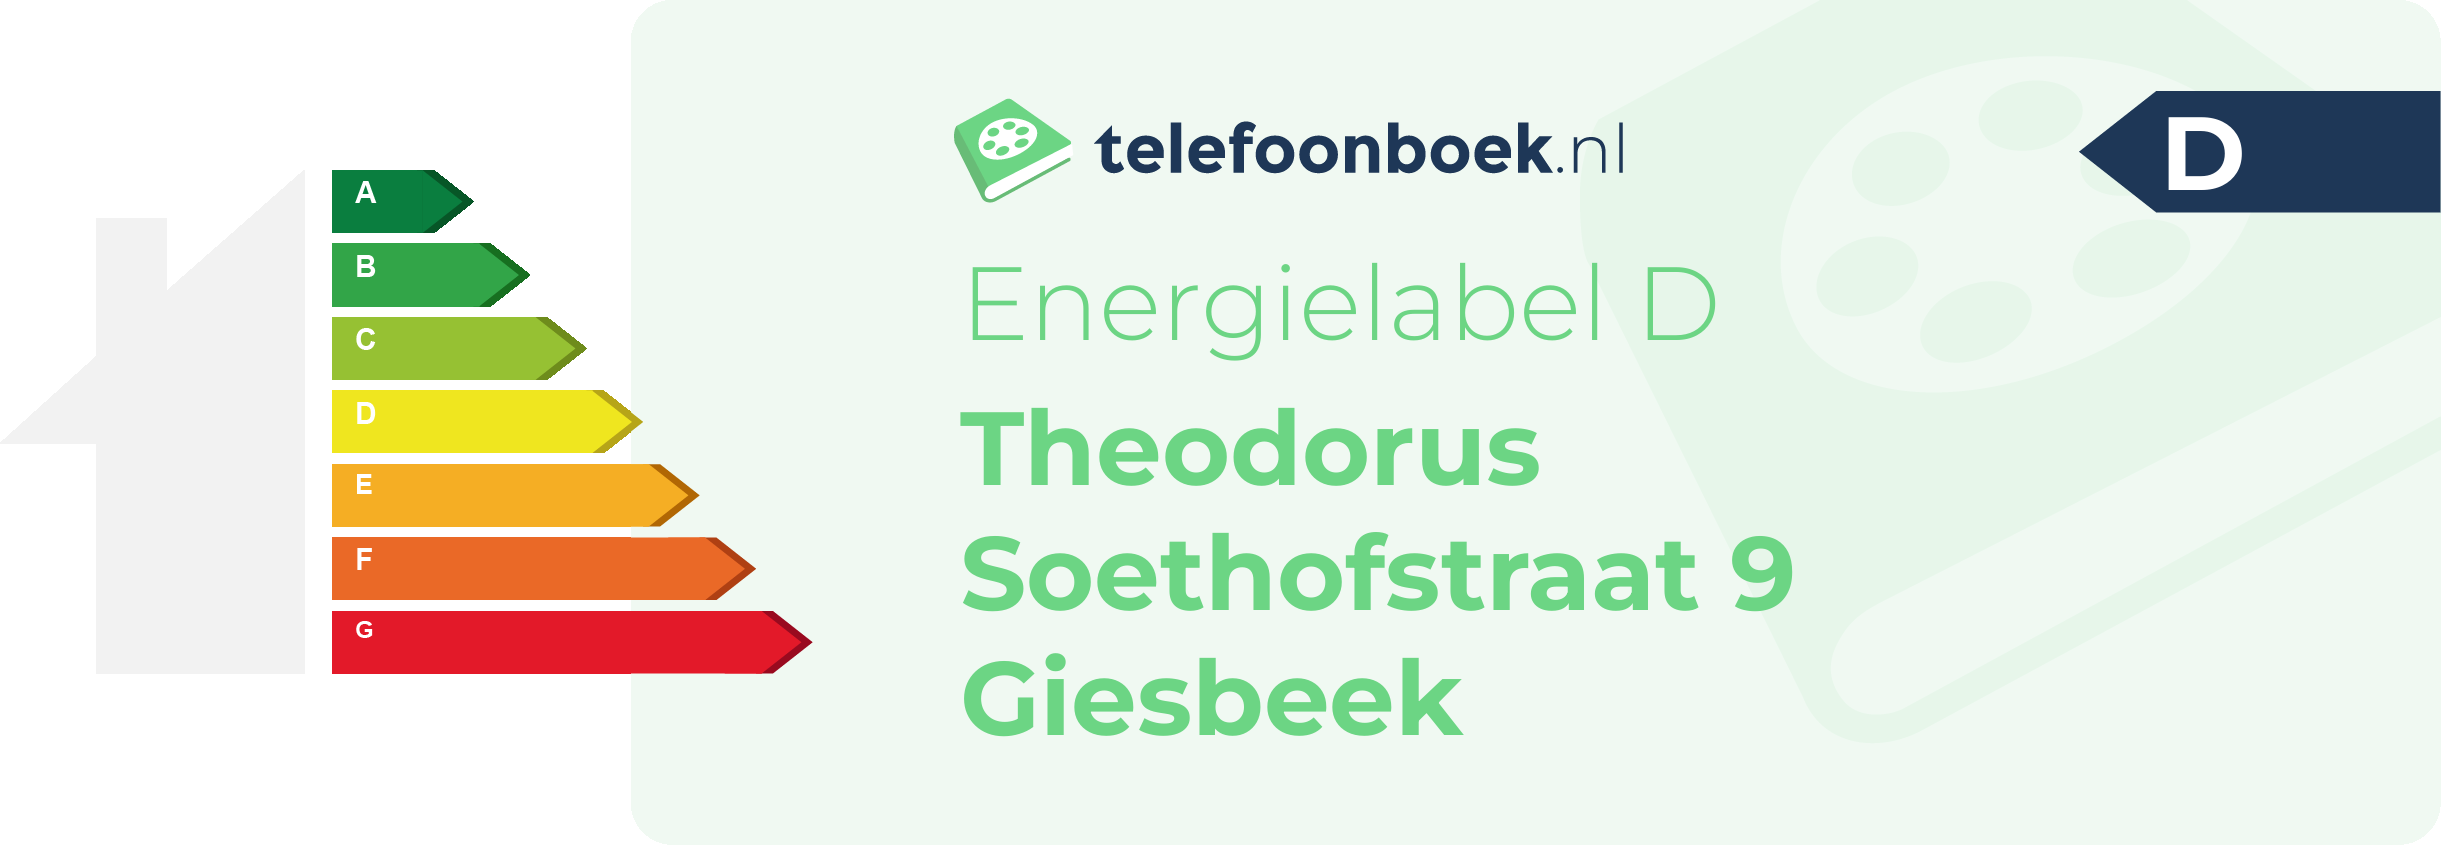 Energielabel Theodorus Soethofstraat 9 Giesbeek